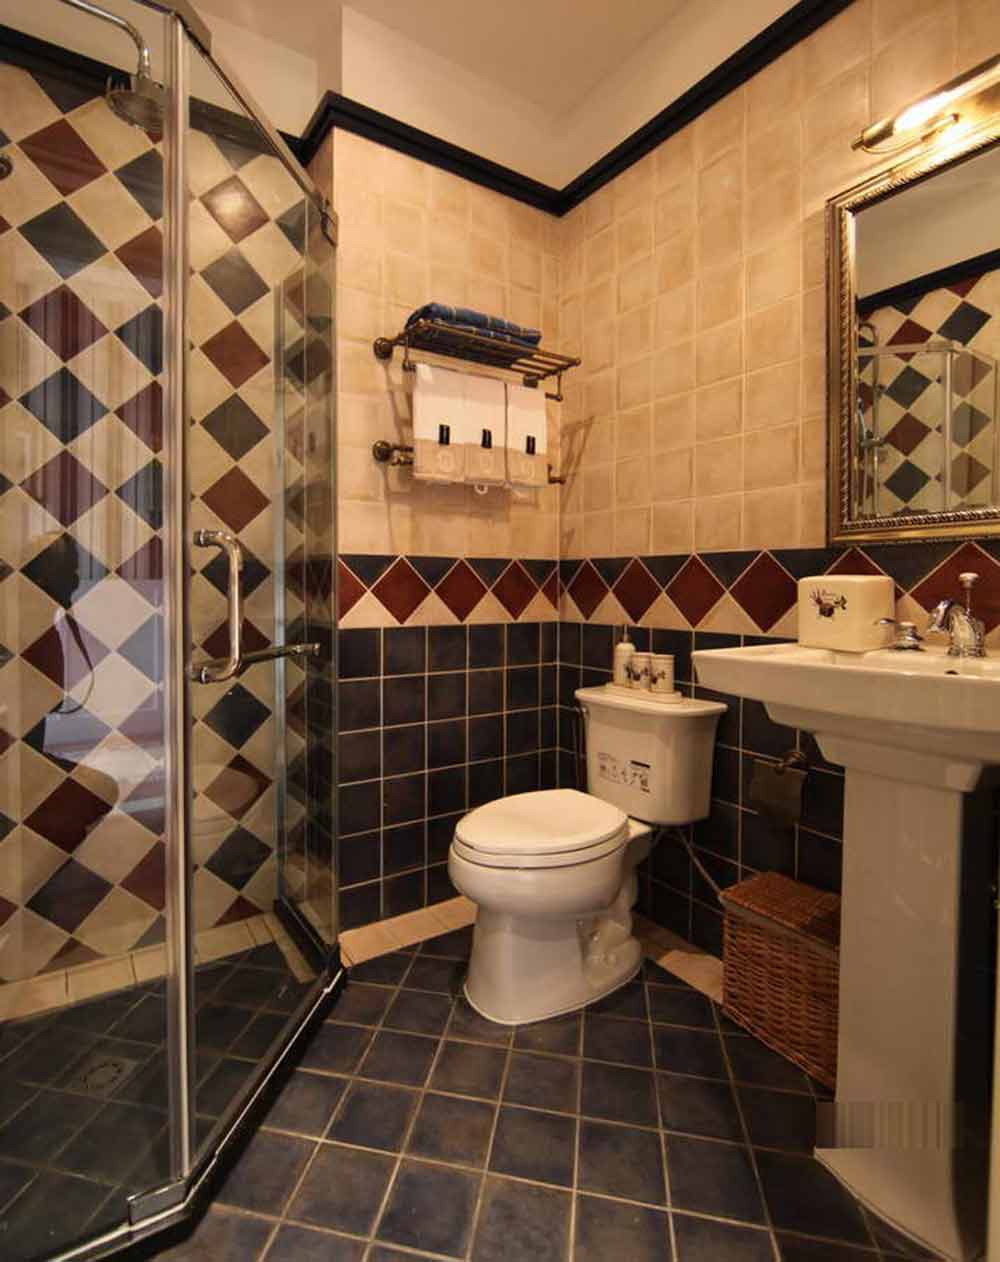 小方砖不同的拼贴方式呈现出了别致可爱的私人空间。洗手台等卫浴用具造型简单，也体现了源自于美国西部的那种最为原始的纯真。